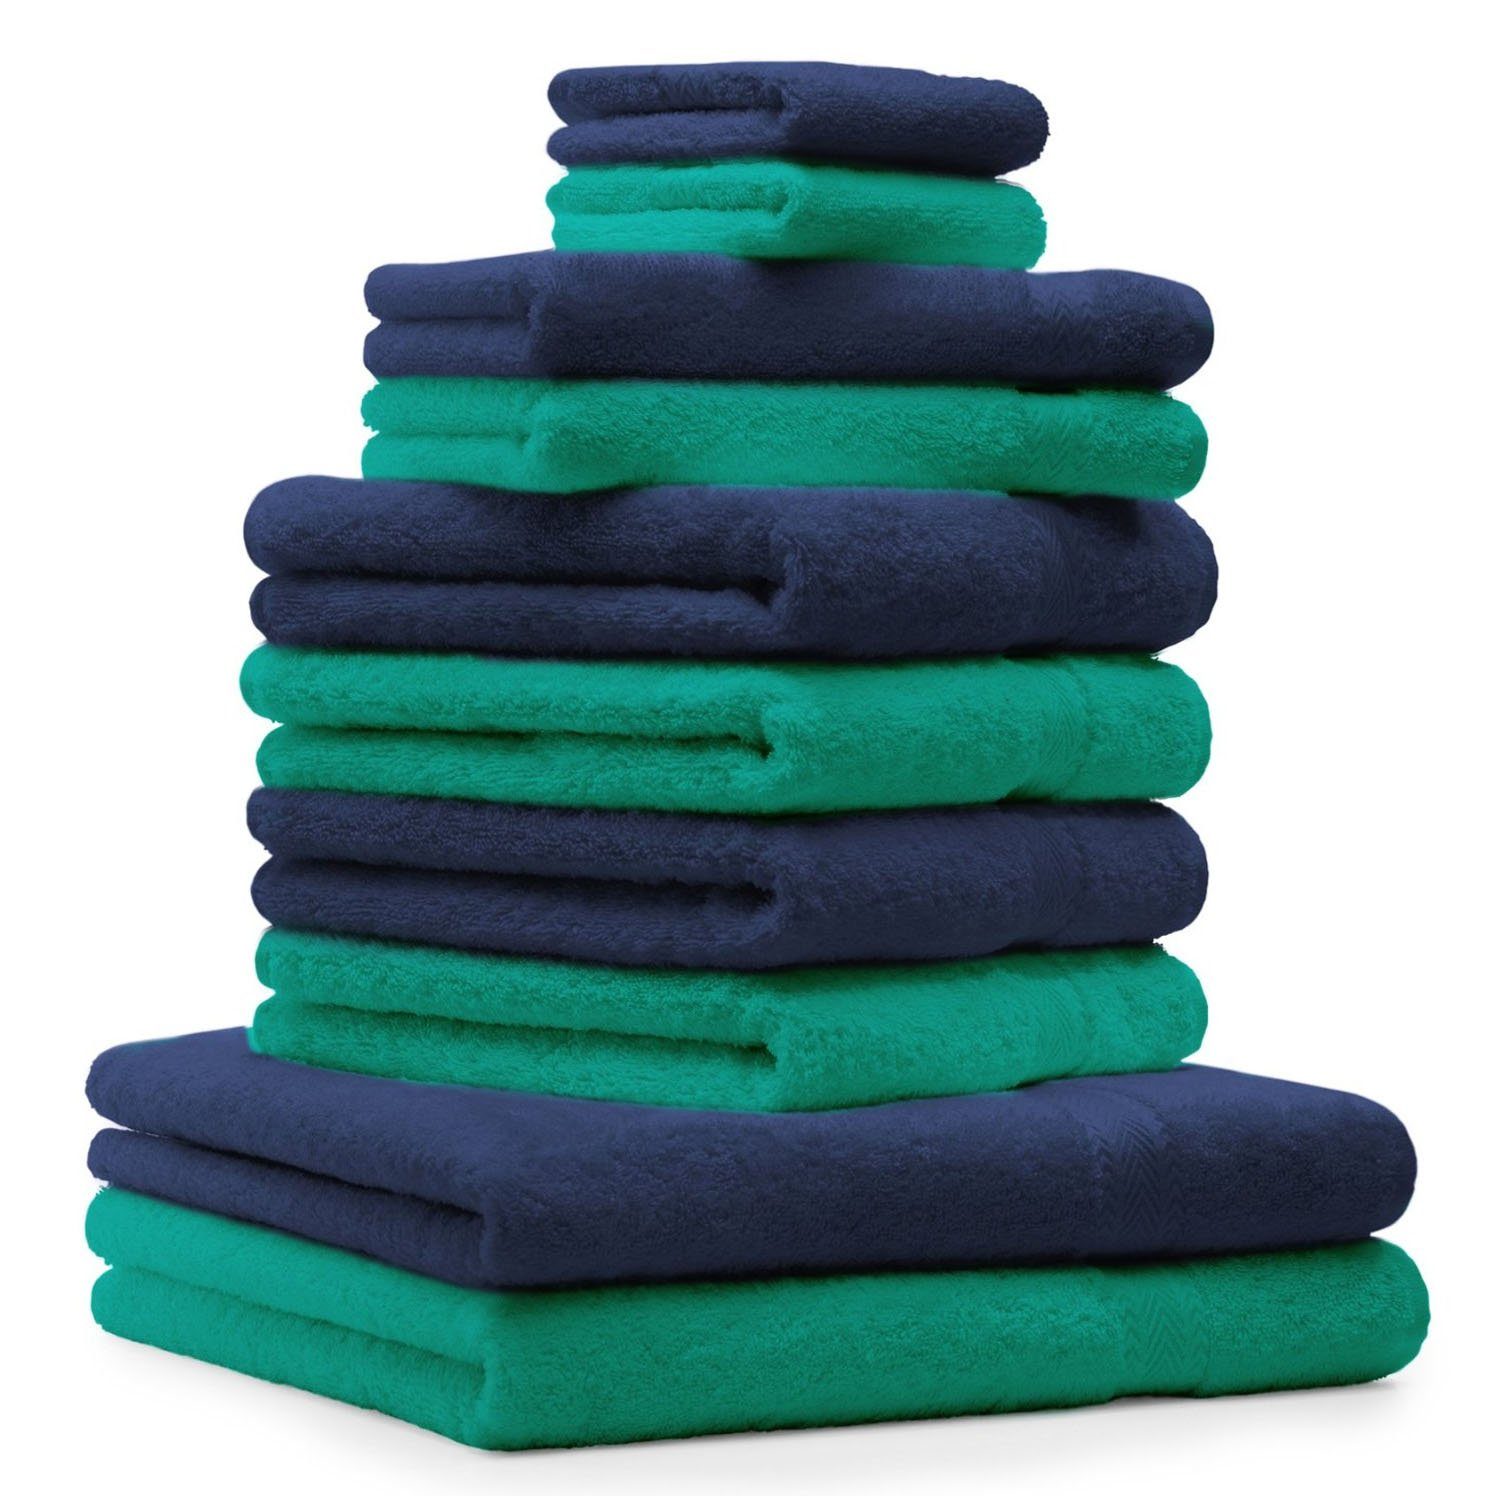 Betz Handtuch Set 10-tlg. Handtuch-Set Premium Farbe Smaragdgrün & Dunkelblau, 100% Baumwolle